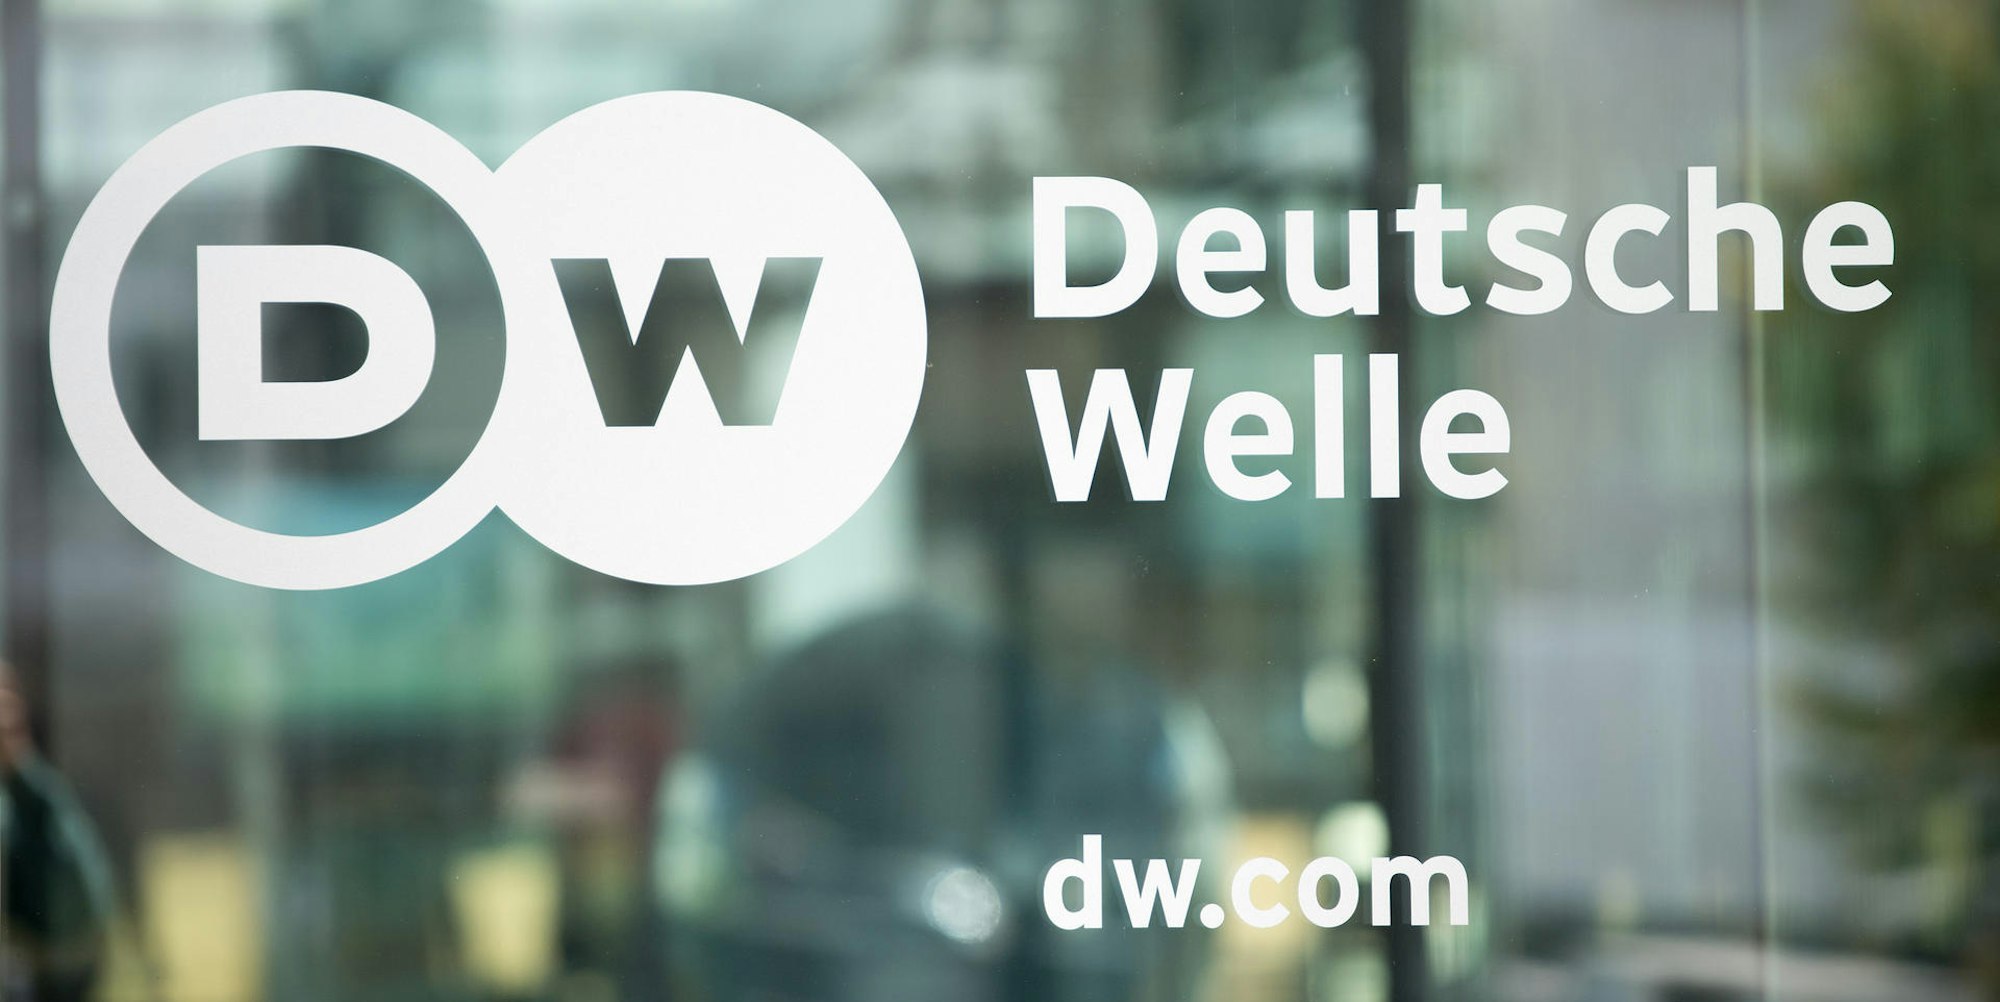 Deutsche Welle Logo